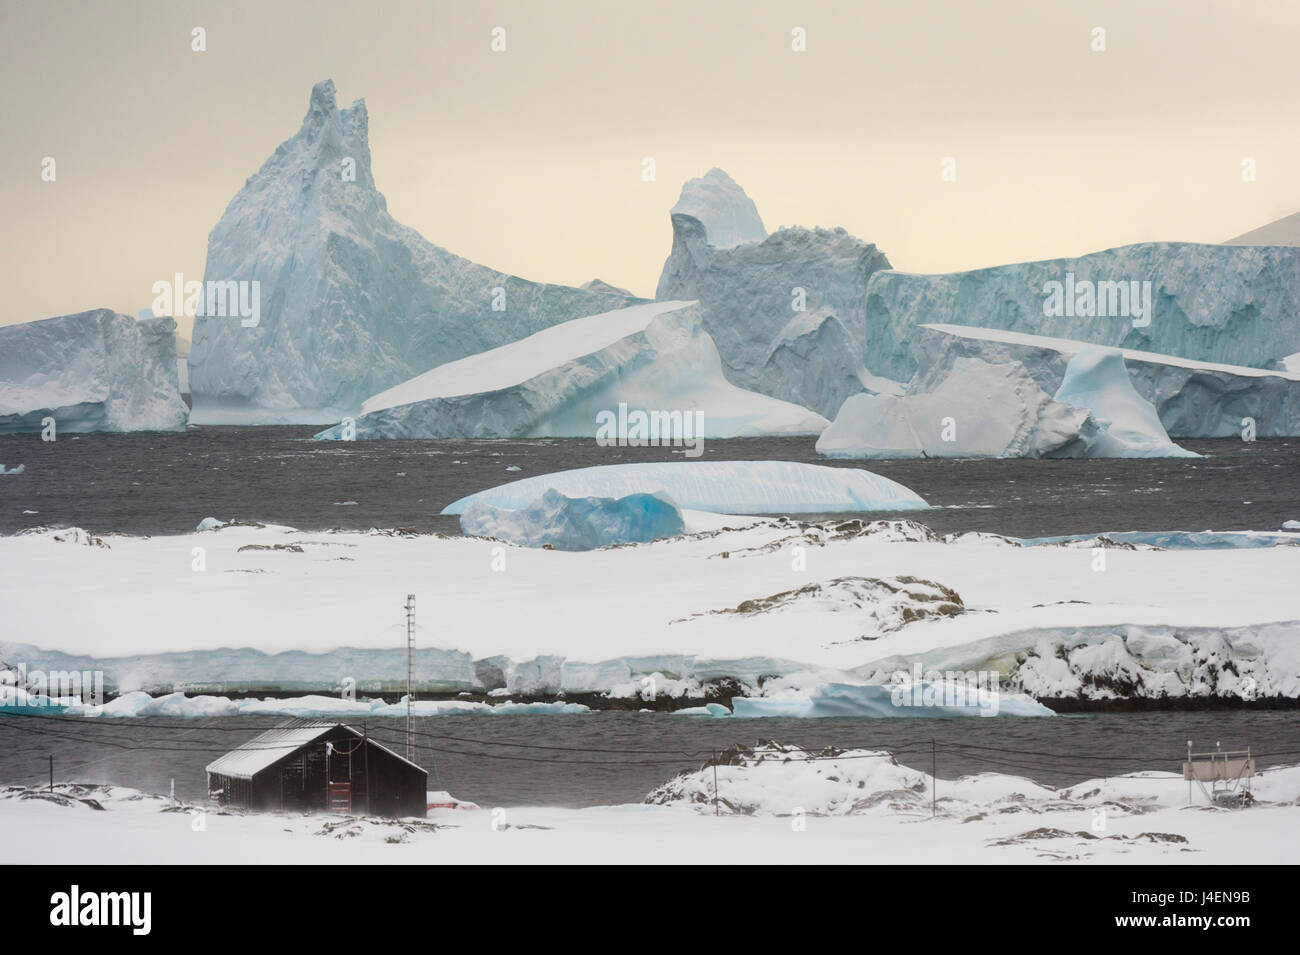 La base de recherche, Vernadsky station antarctique ukrainienne à Marina Point sur l'Île Galindez dans les îles de l'Argentine, de l'Antarctique Banque D'Images